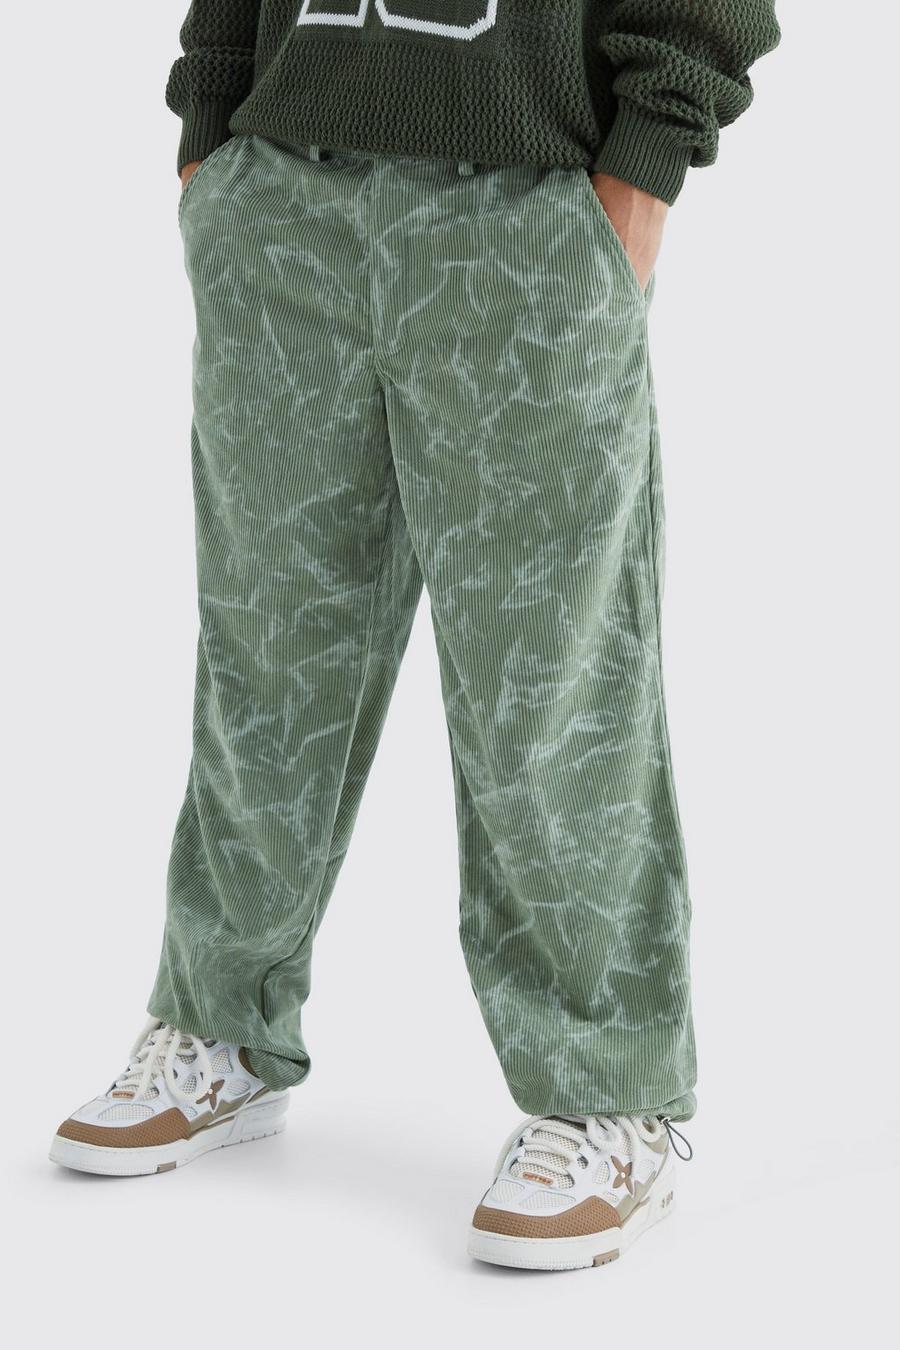 Pantaloni rilassati in velluto a coste in fantasia tie dye con vita fissa, Green